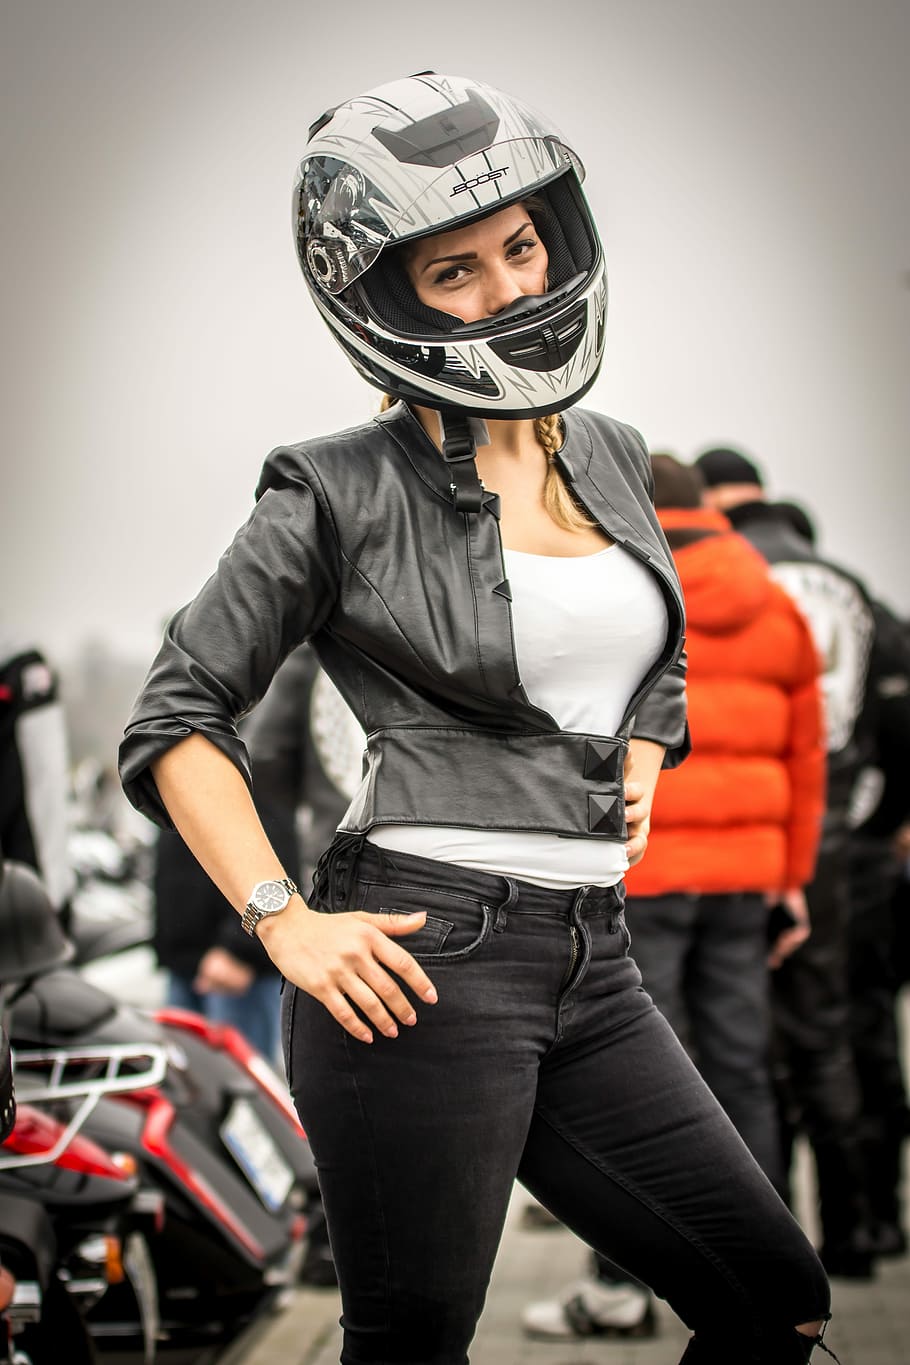 女性, 身に着けている, 白, 黒, フルフェイスヘルメット, 競争, 選手権, レース, オートレース, オートバイ